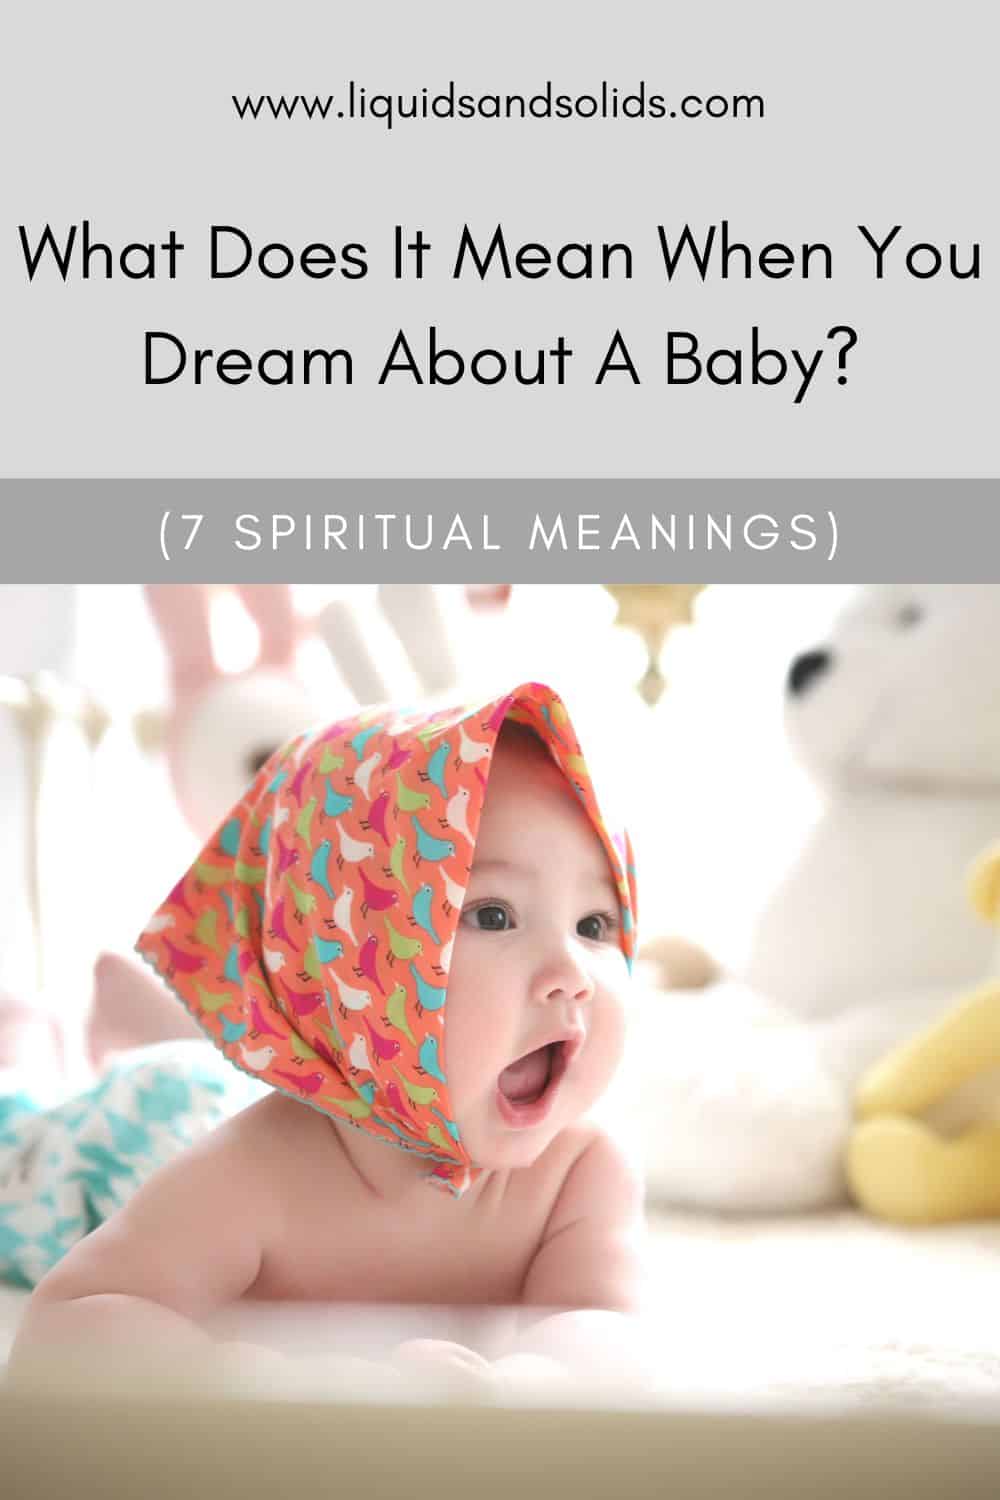  რას ნიშნავს, როცა ბავშვზე ოცნებობ? (7 სულიერი მნიშვნელობა)